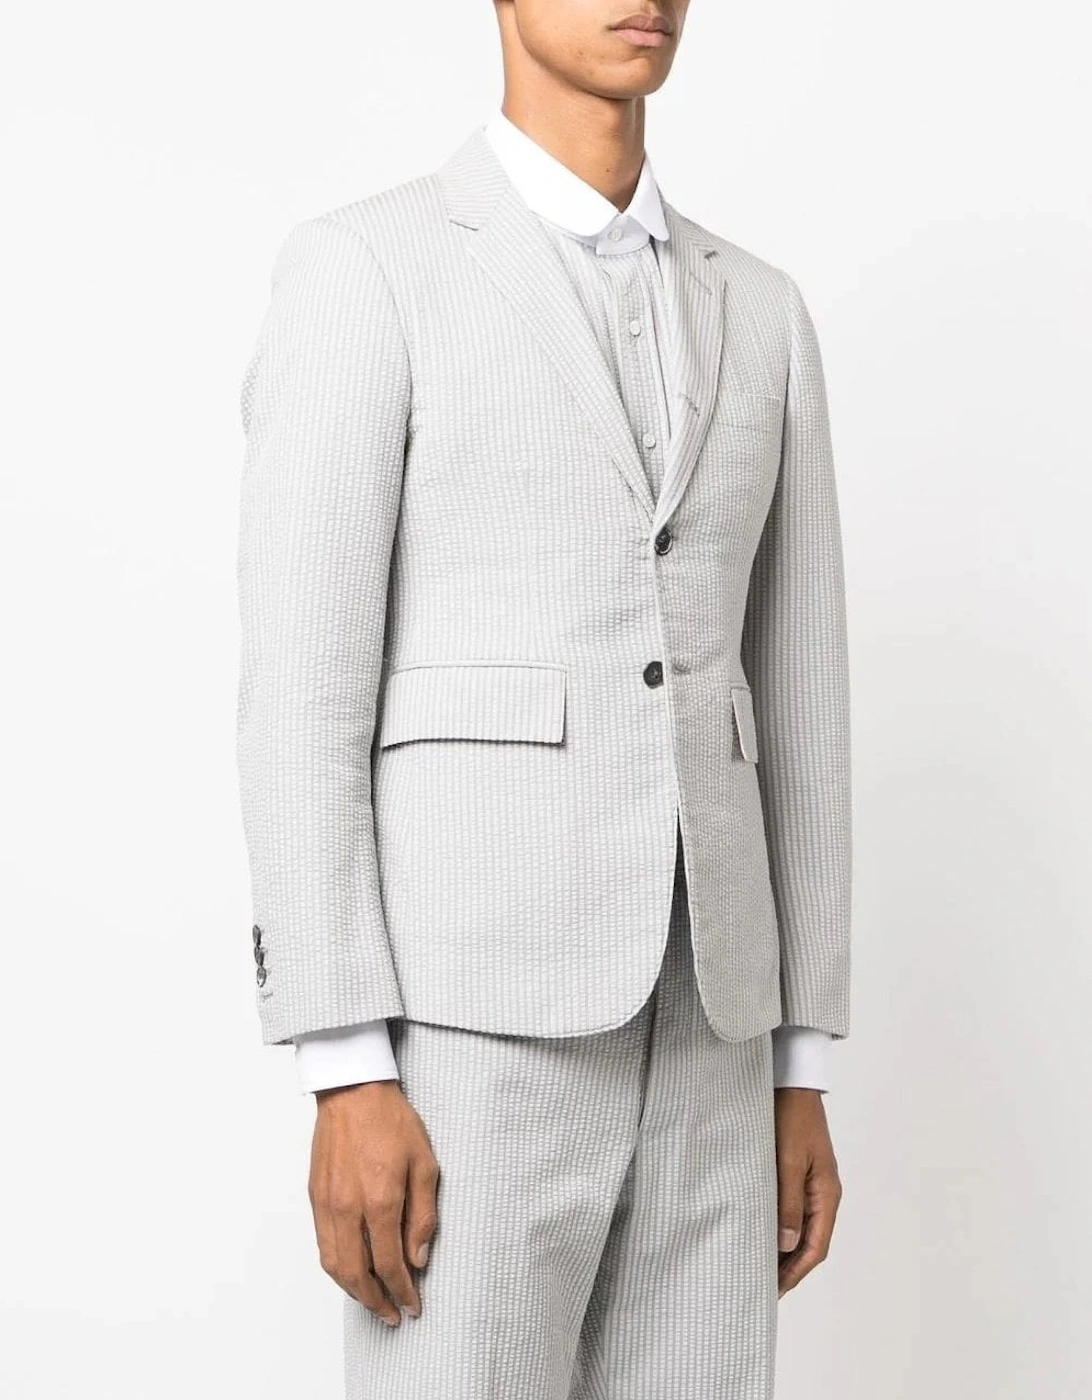 Cotton Seersucker Jacket White/Grey